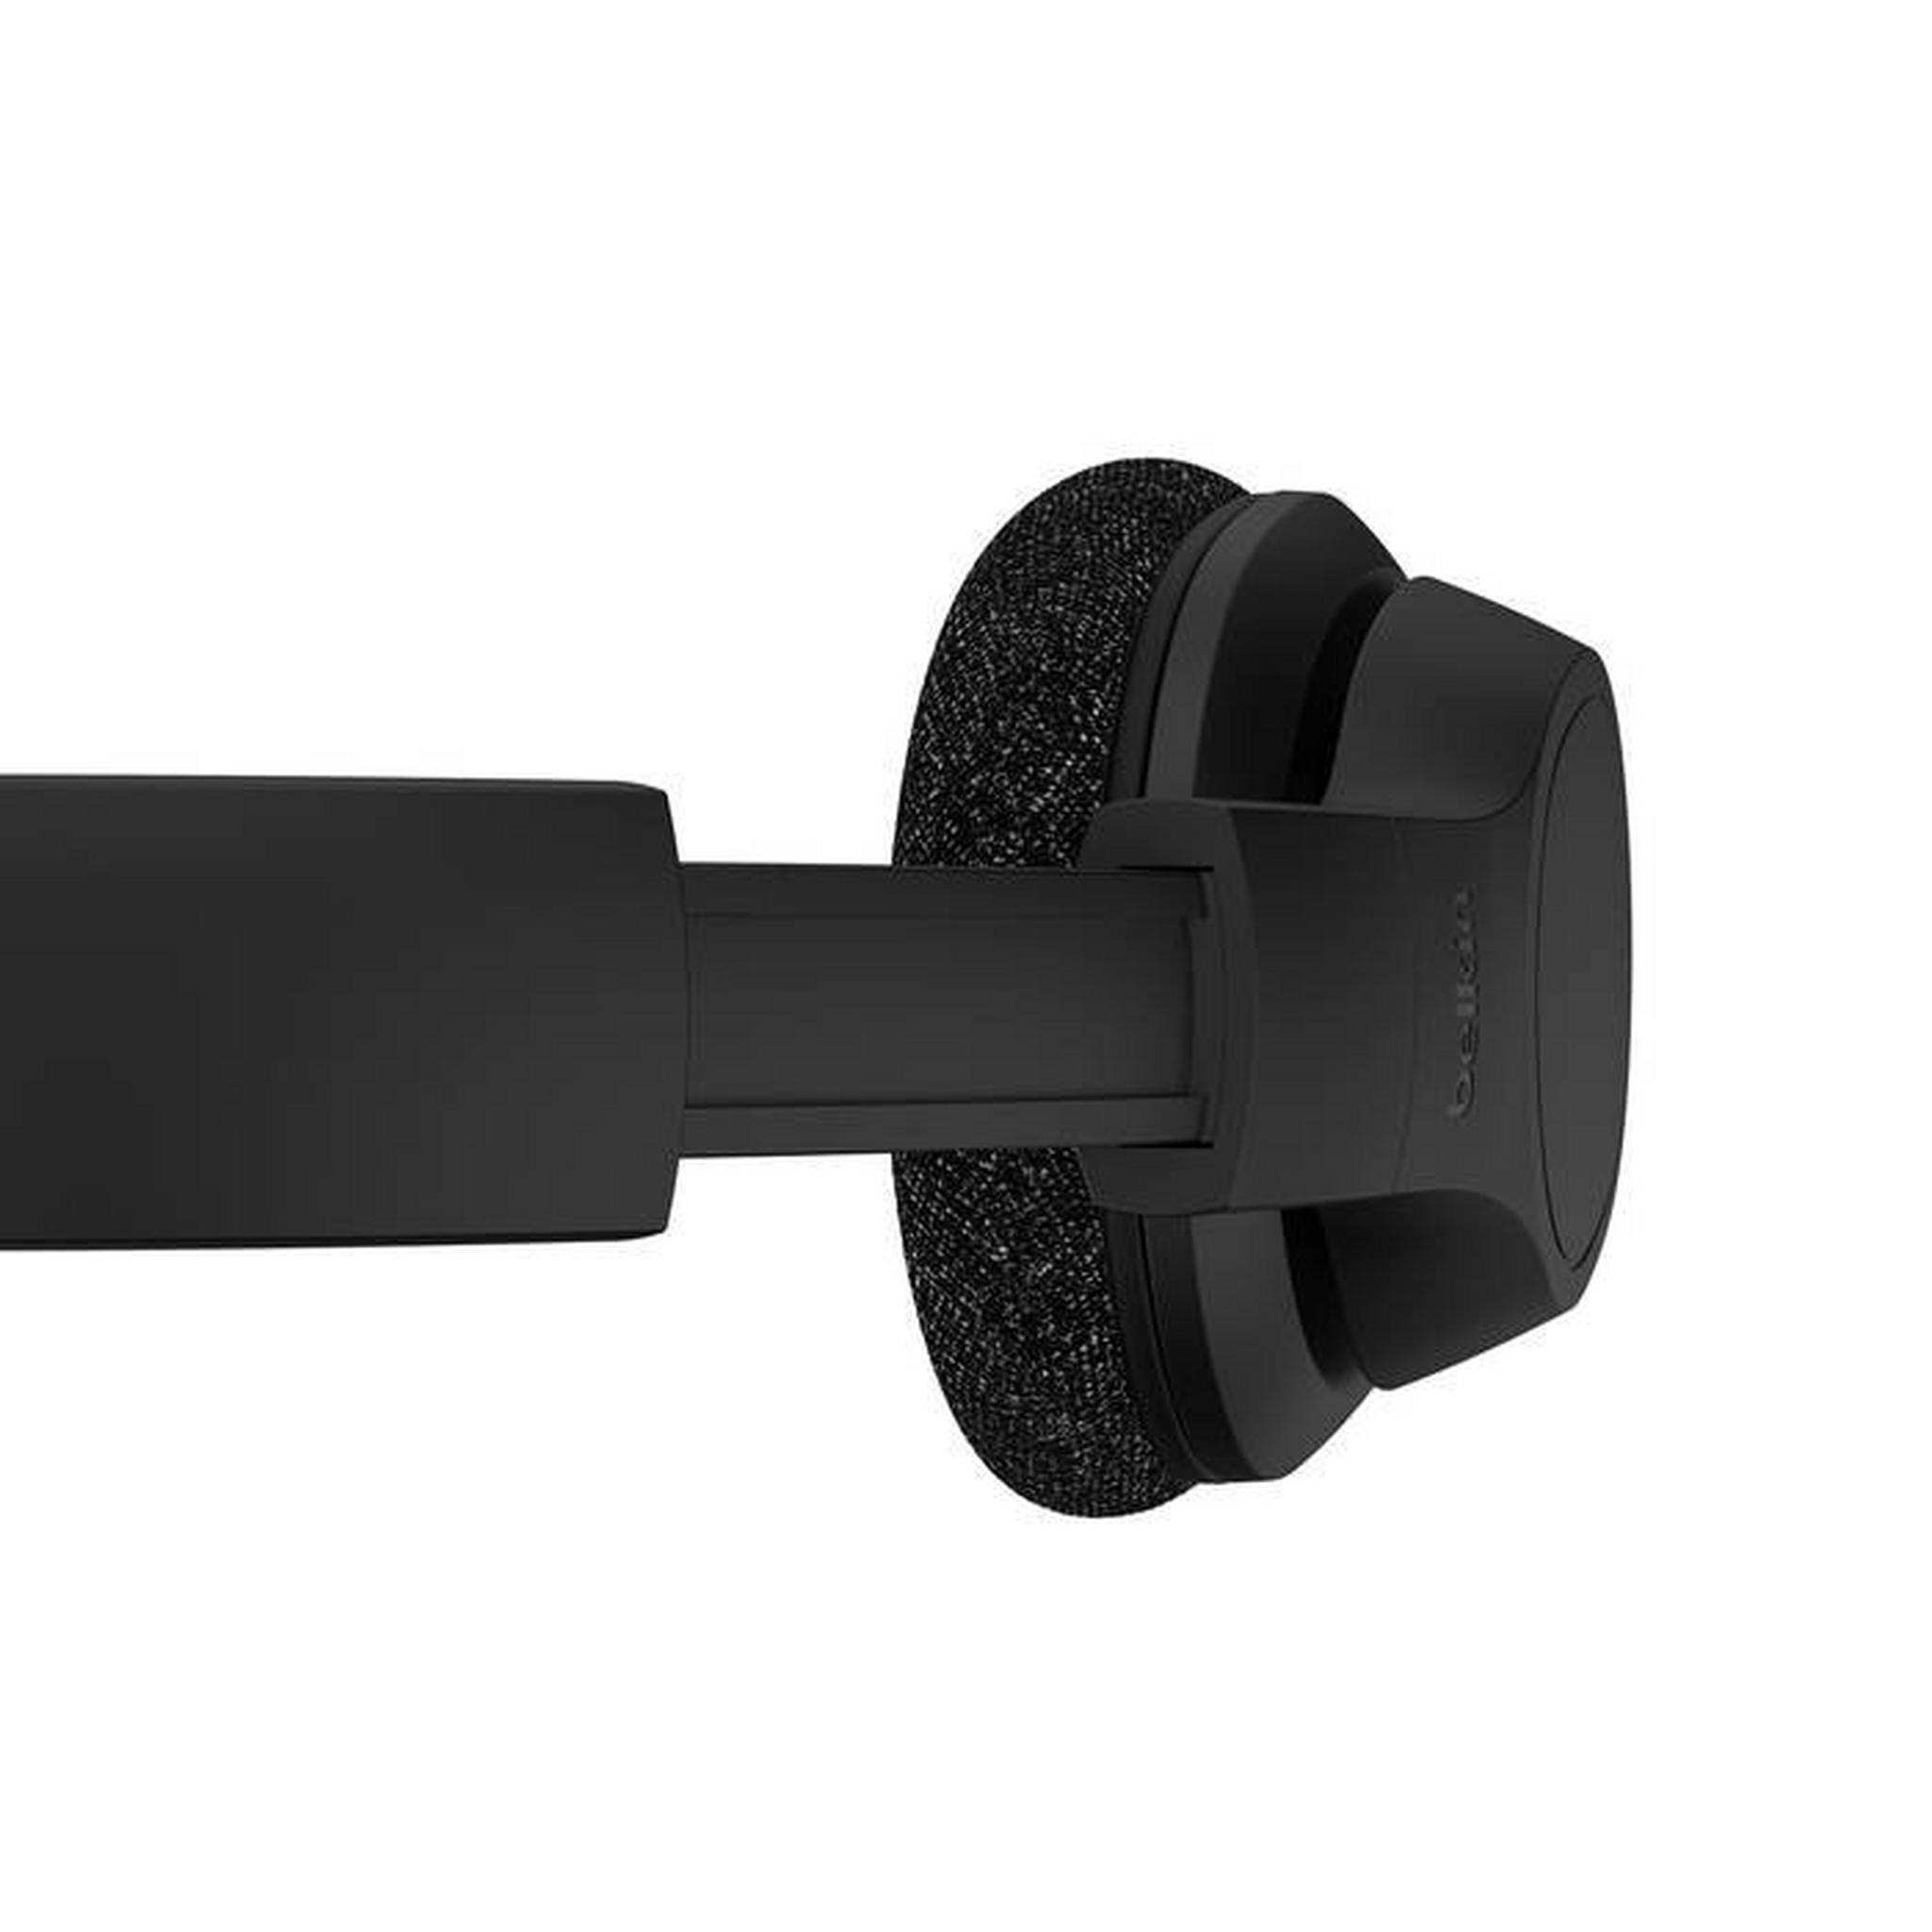 Belkin Soundform Adapt Wireless Headset, AUD005btBLK – Black